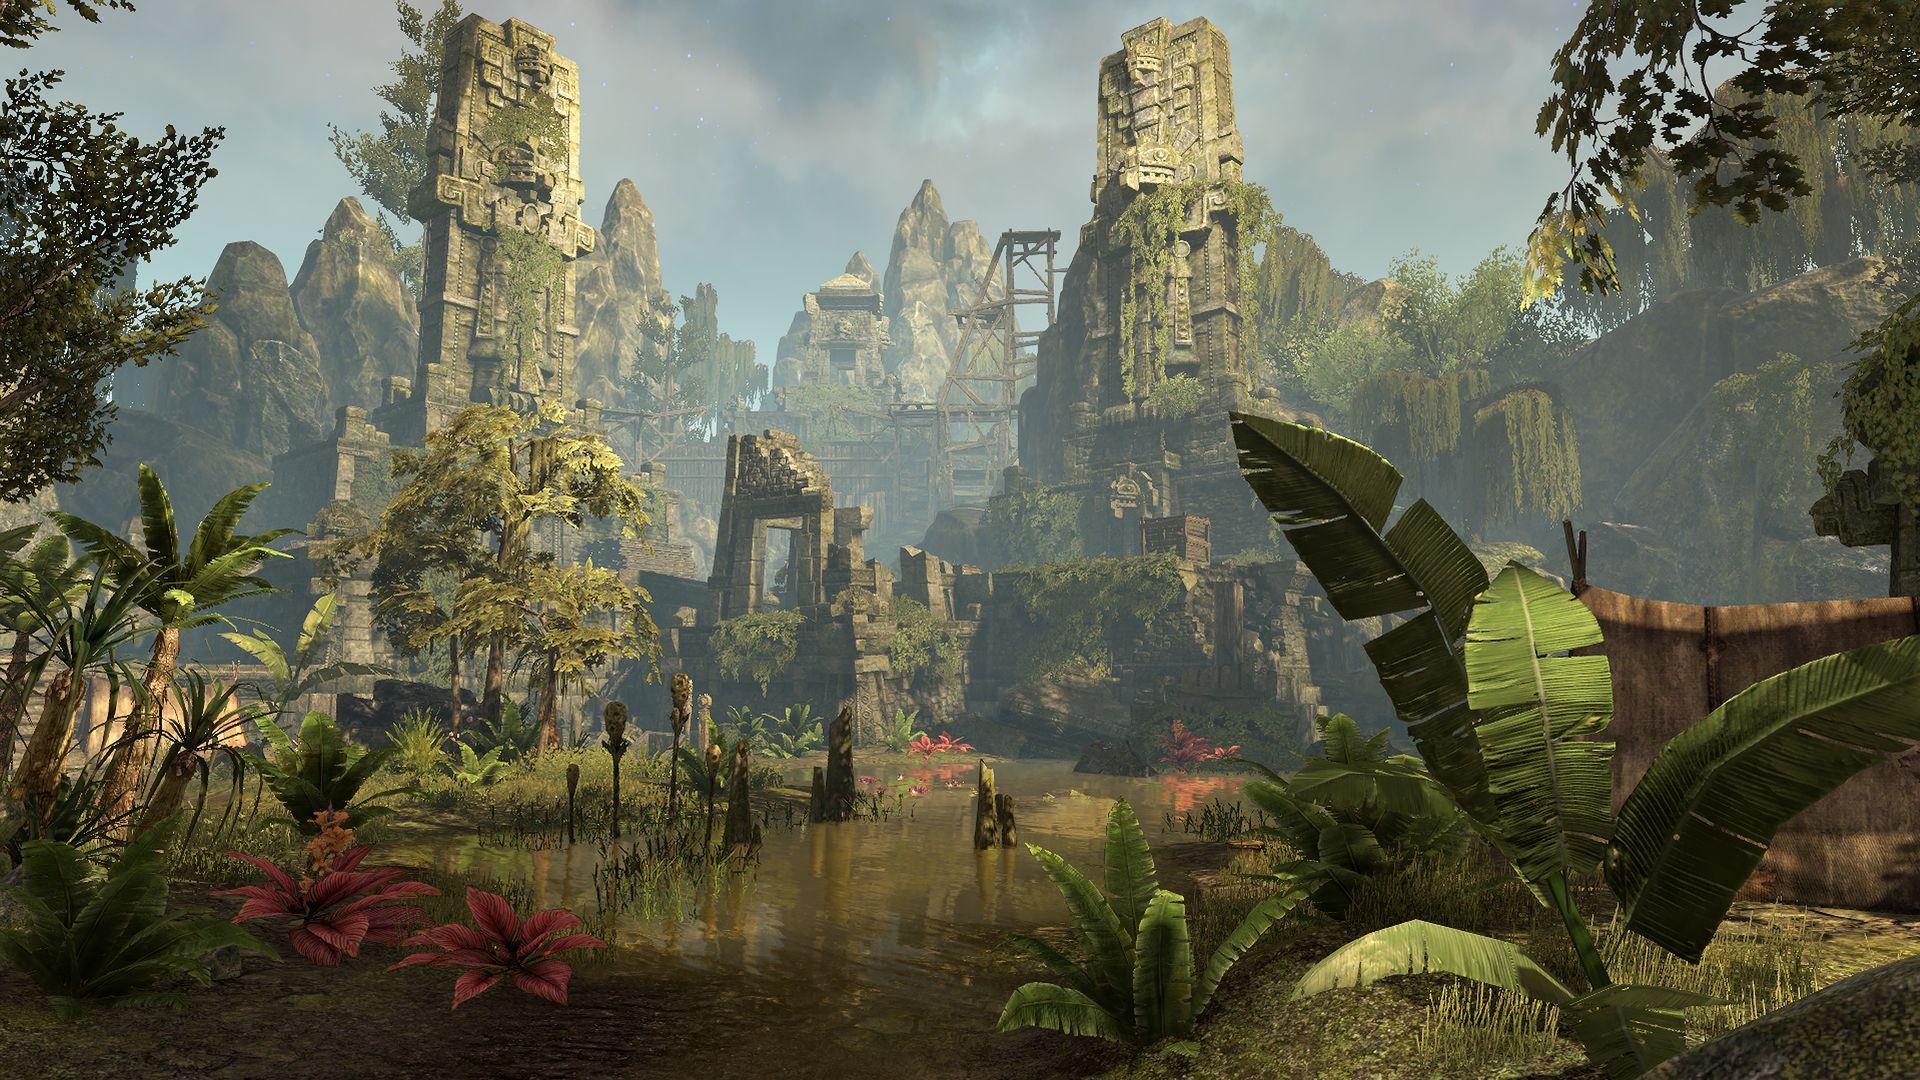 Elder Scrolls Online – Das DLC „Murkmire“ erscheint am 22. Oktober